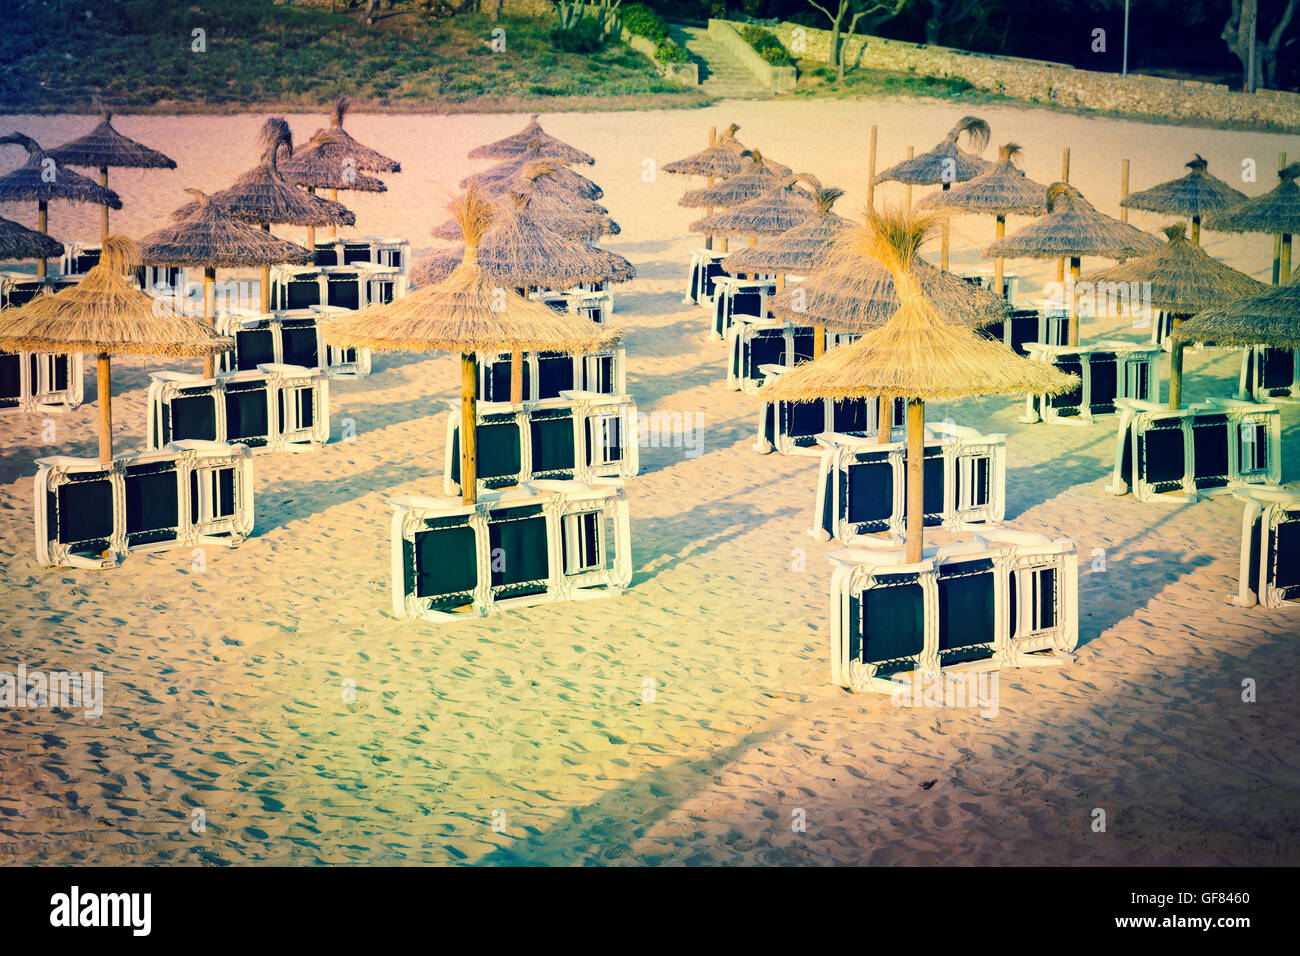 Sun loungers on a sandy beach Stock Photo